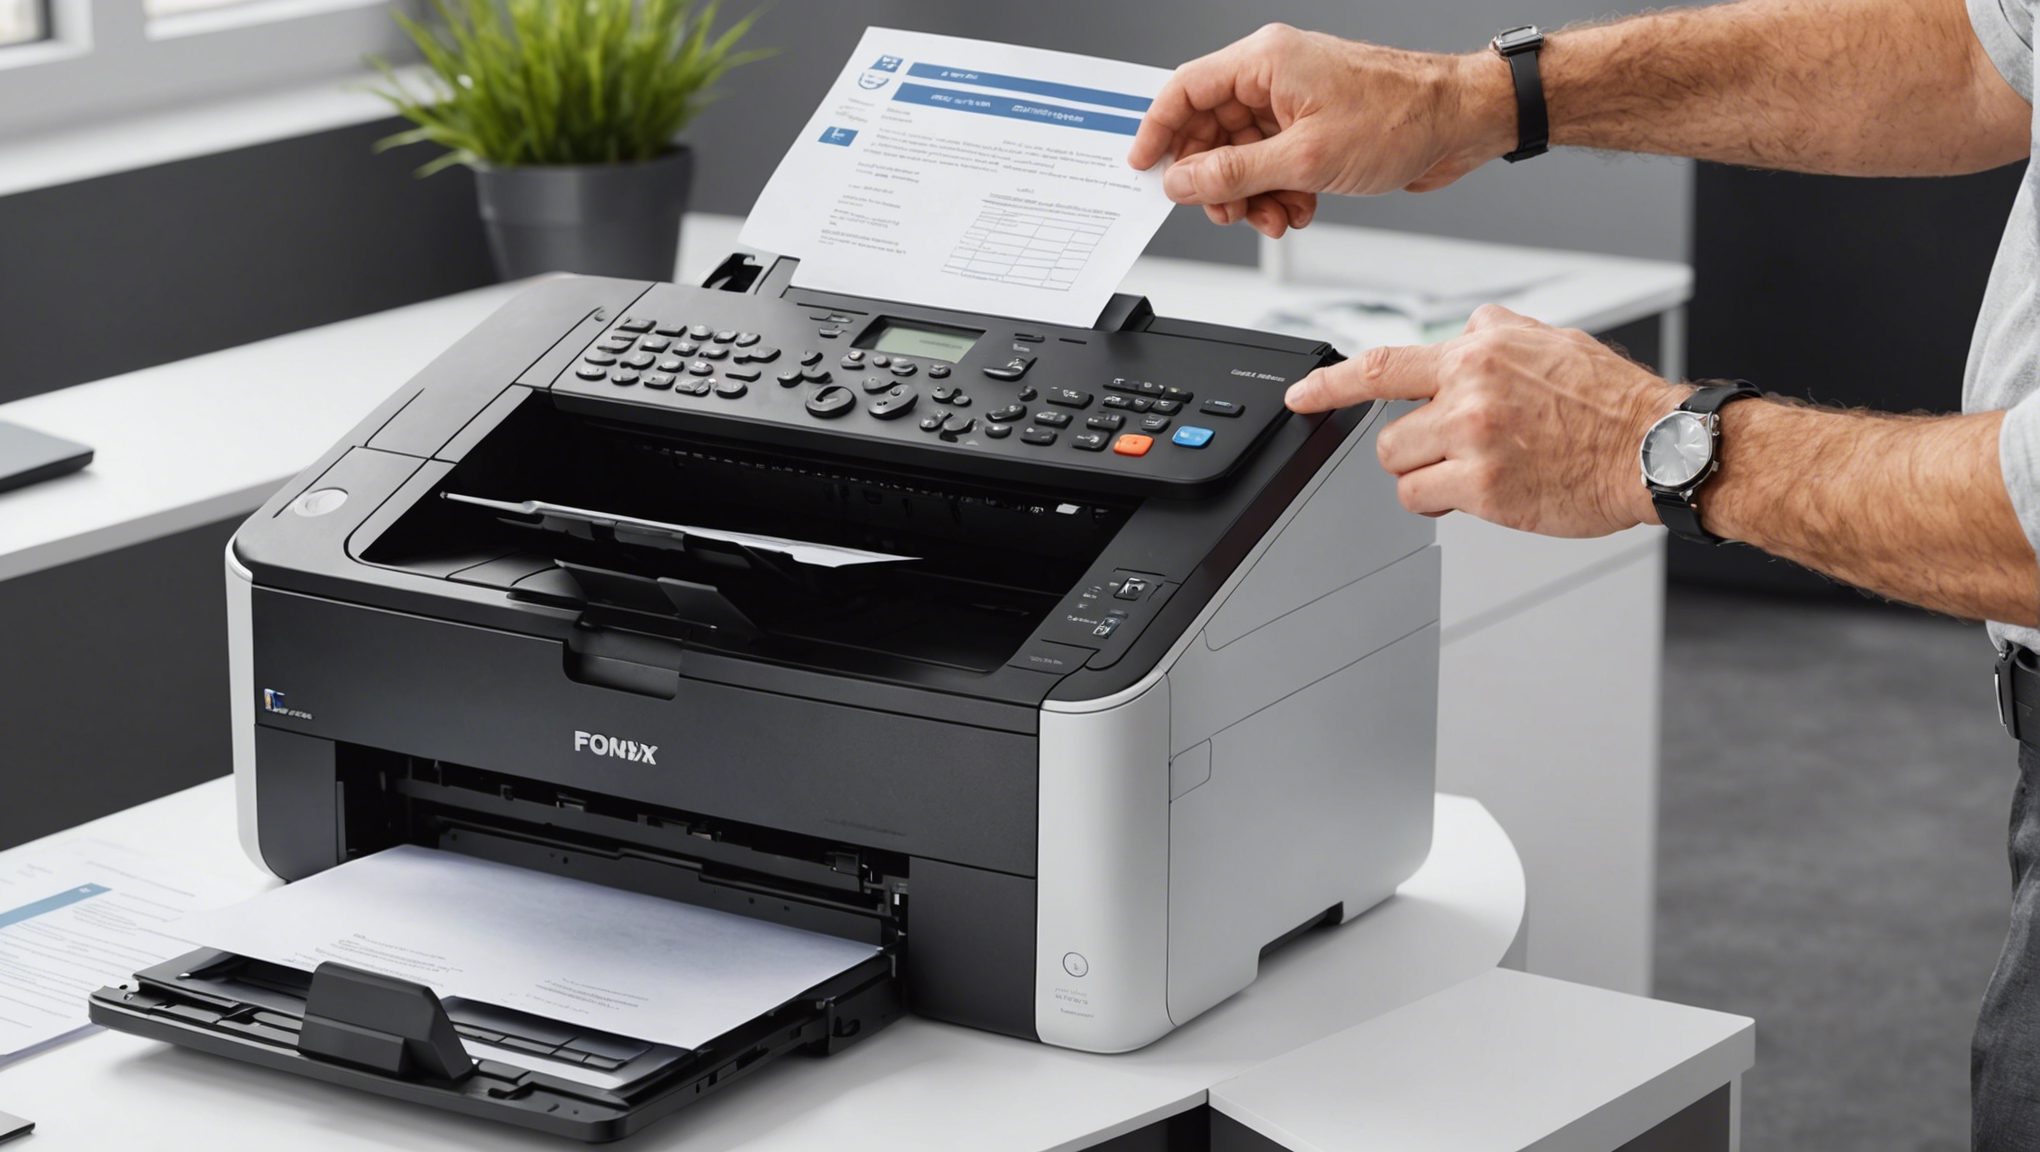 découvrez notre gamme d'imprimantes professionnelles à prix abordables avec des fonctions de fax intégrées. trouvez l'équilibre parfait entre performances et coûts grâce à nos solutions d'impression de qualité professionnelle.